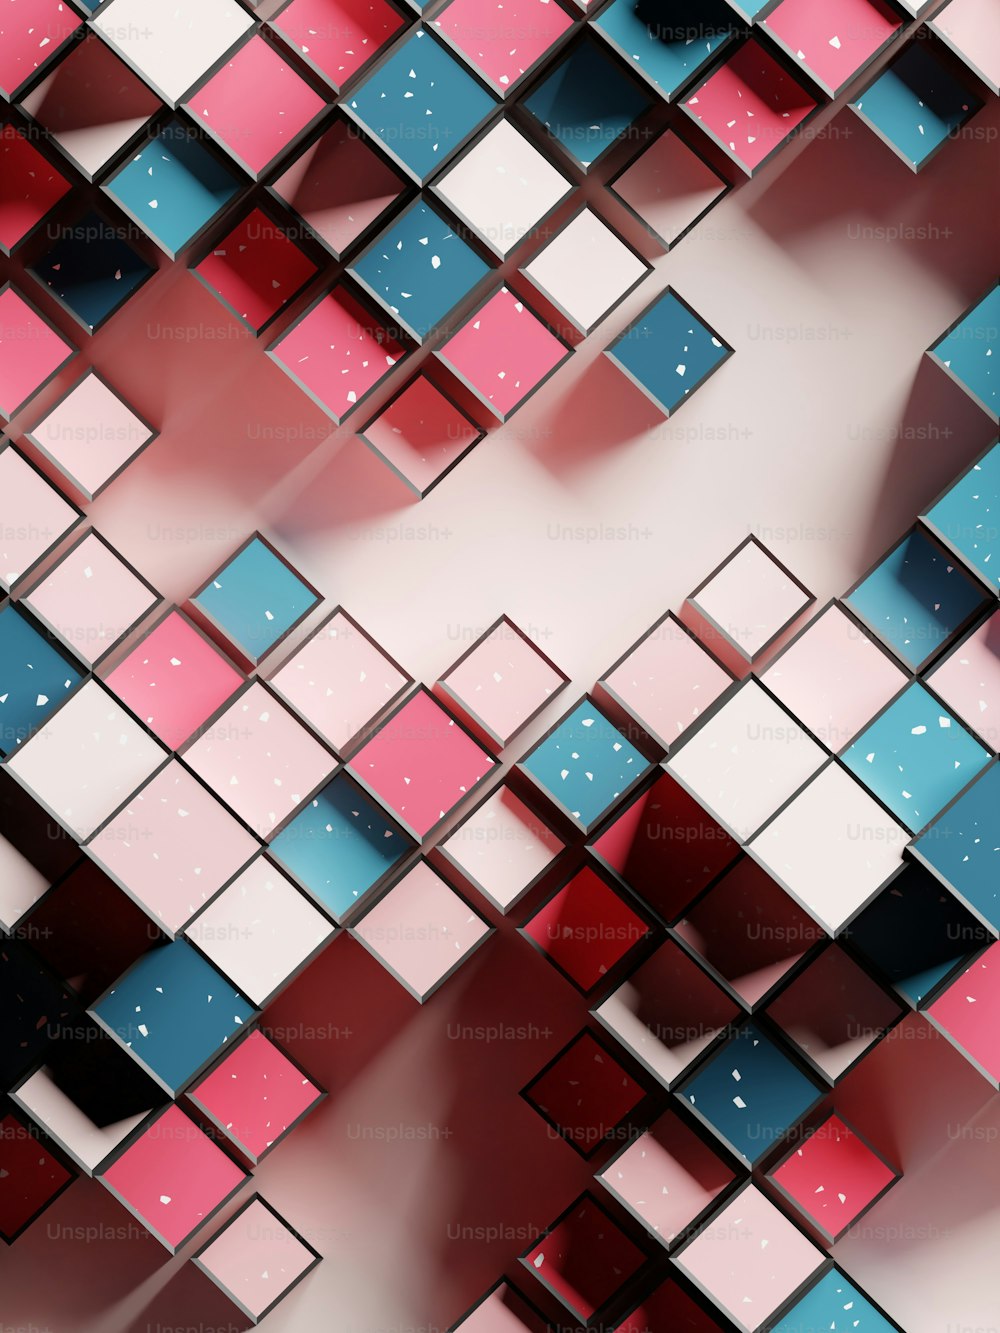 Una imagen abstracta de cuadrados rosados y azules